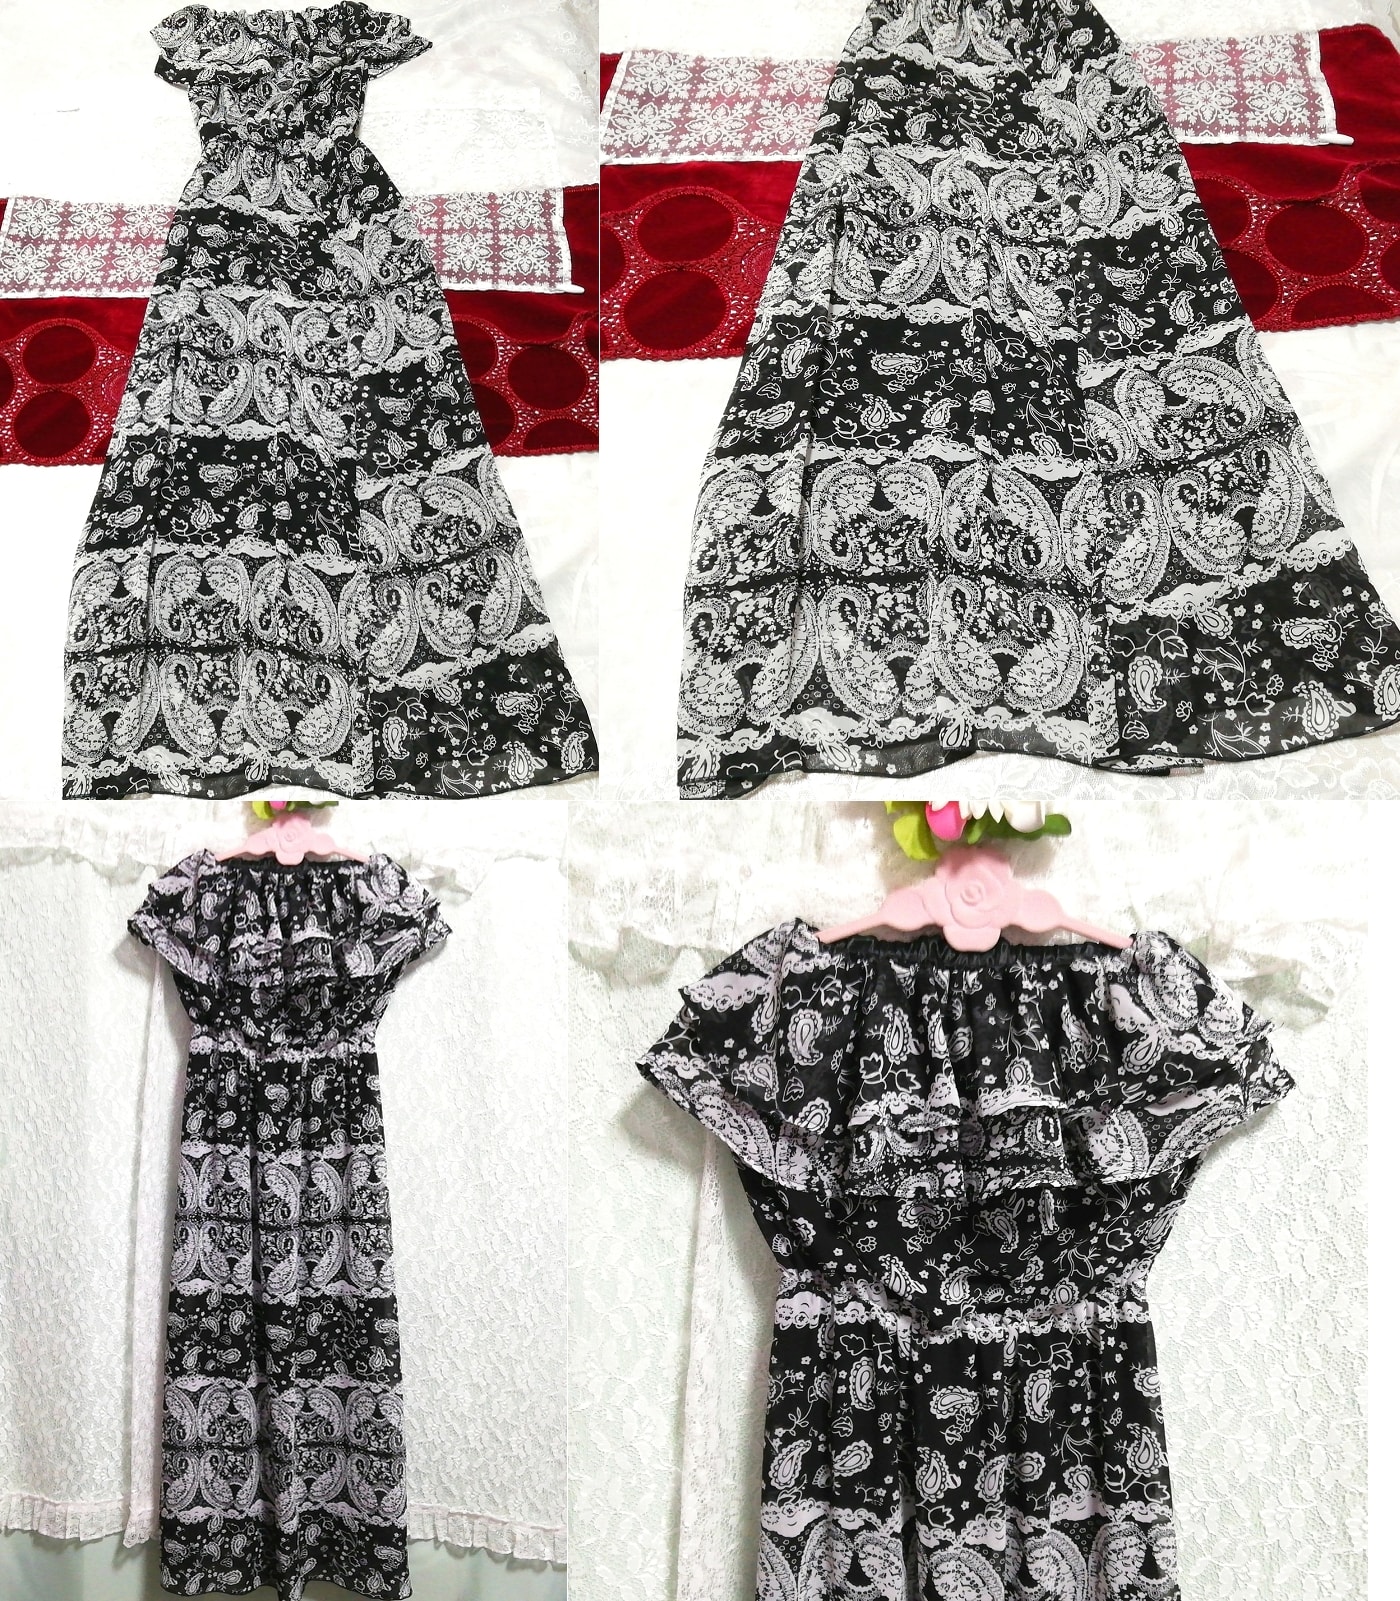 فستان نوم ماكسي من الشيفون ذو النمط العرقي باللون الأسود والرمادي, تنورة طويلة, حجم م